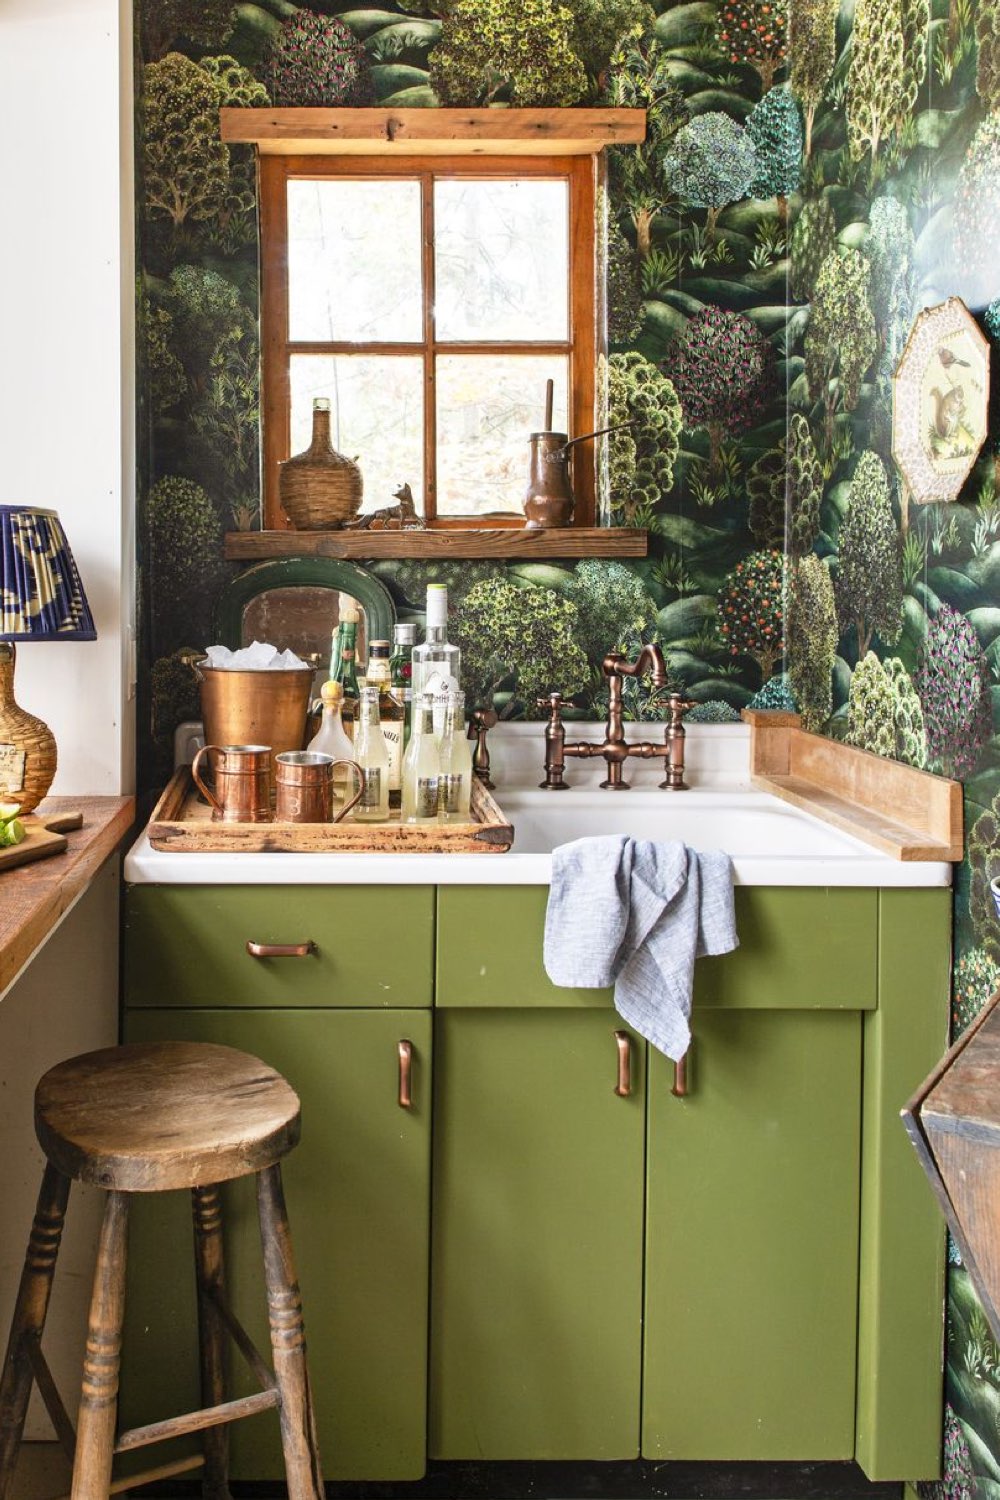 visite deco cottage charmant montagne meuble couleur vert olive papier peint motif végétal coin bar